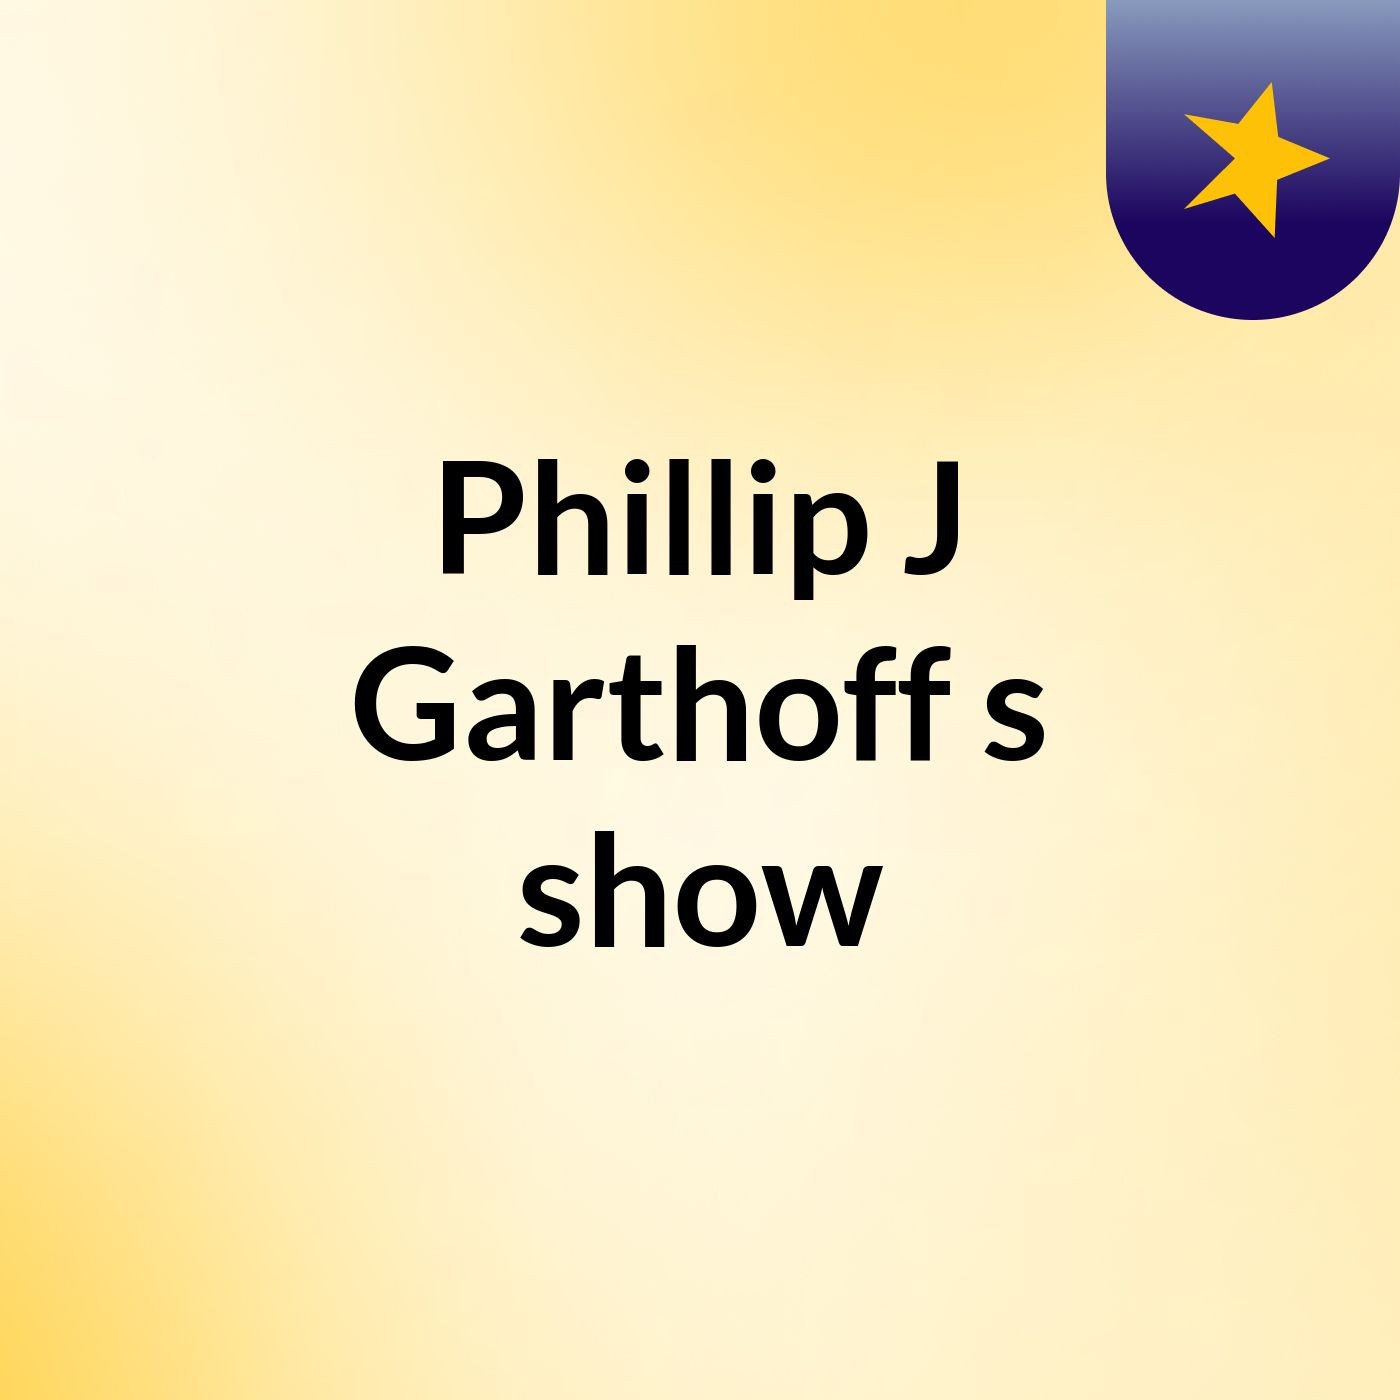 Episode 14 - Phillip J Garthoff's show